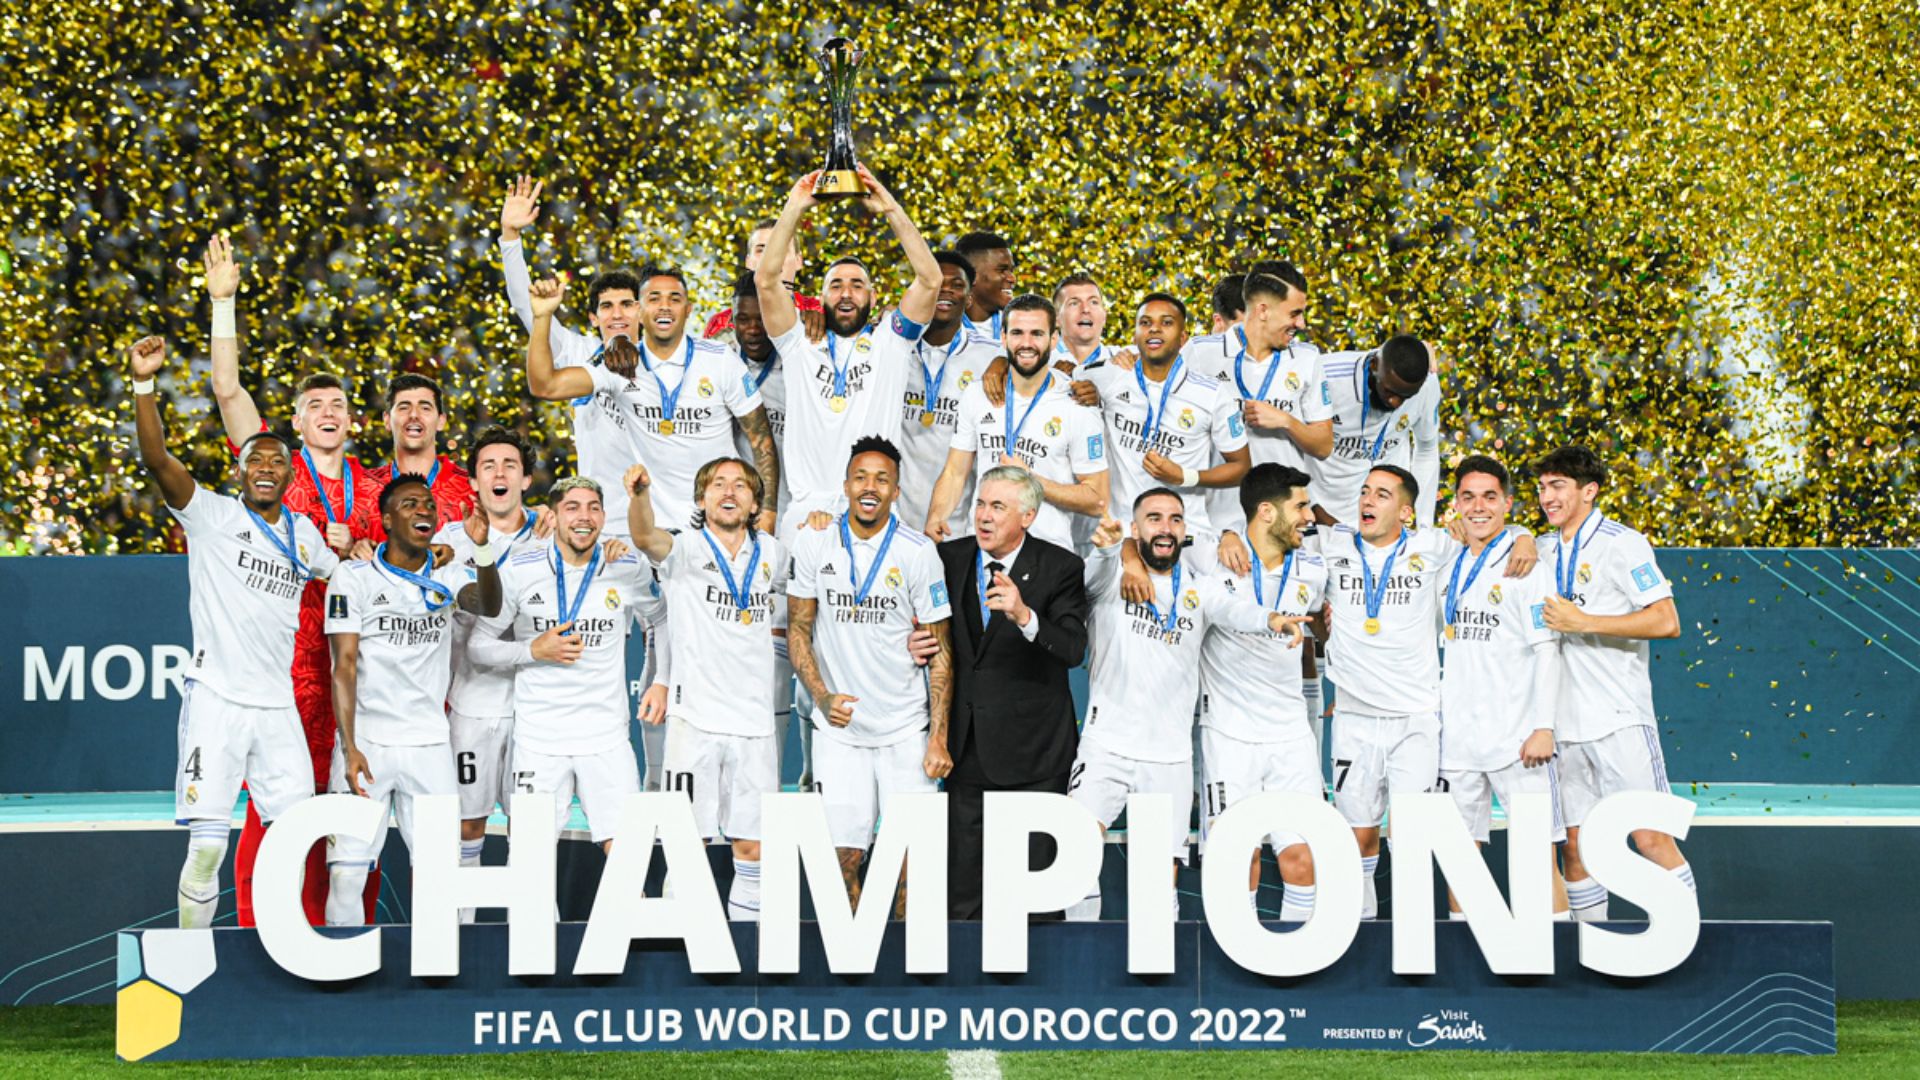 Real Madrid e consolidaram como os maiores vencedores do Mundial de Clubes com 8 taças - Foto: Reprodução/Twitter @realmadrid